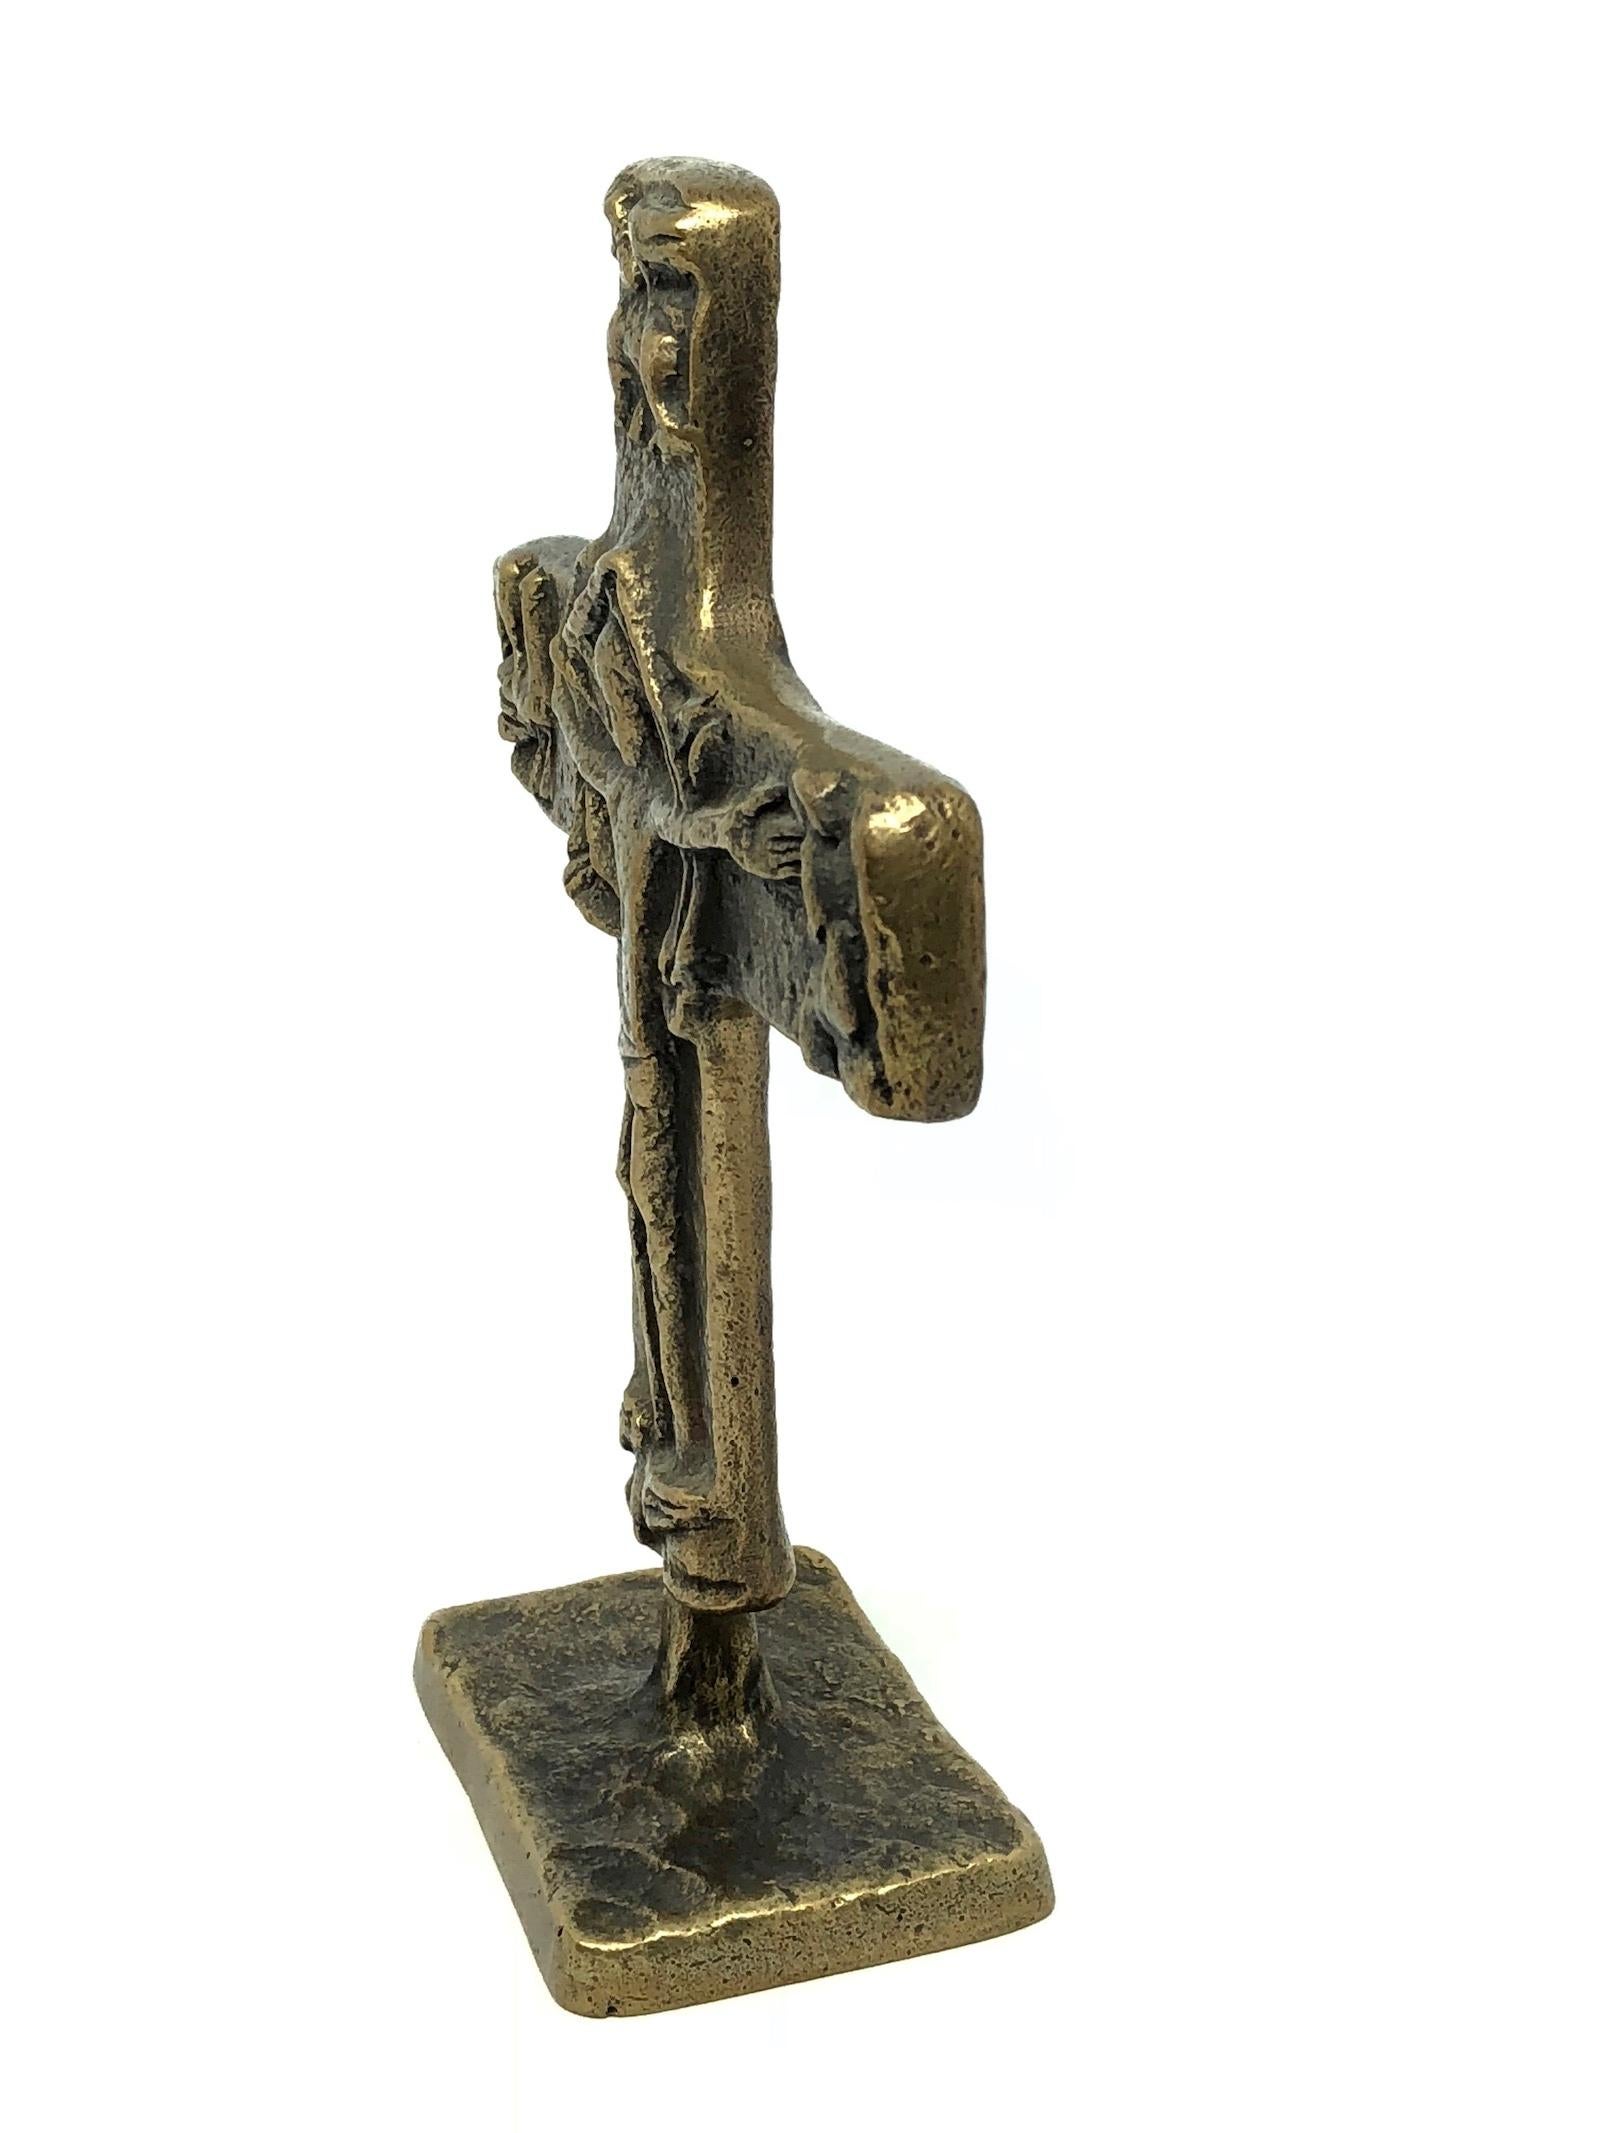 Mid-Century Modern Brutalist 1970s German bronze sculpture. Found at an estate sale in Nuremberg, Germany. It is not marked, attributed to Egino Weinert. 
Egino-Günter Weinert was born on 03/03/1920 as Franz-Stanislaus-Günter Przybilski in Berlin